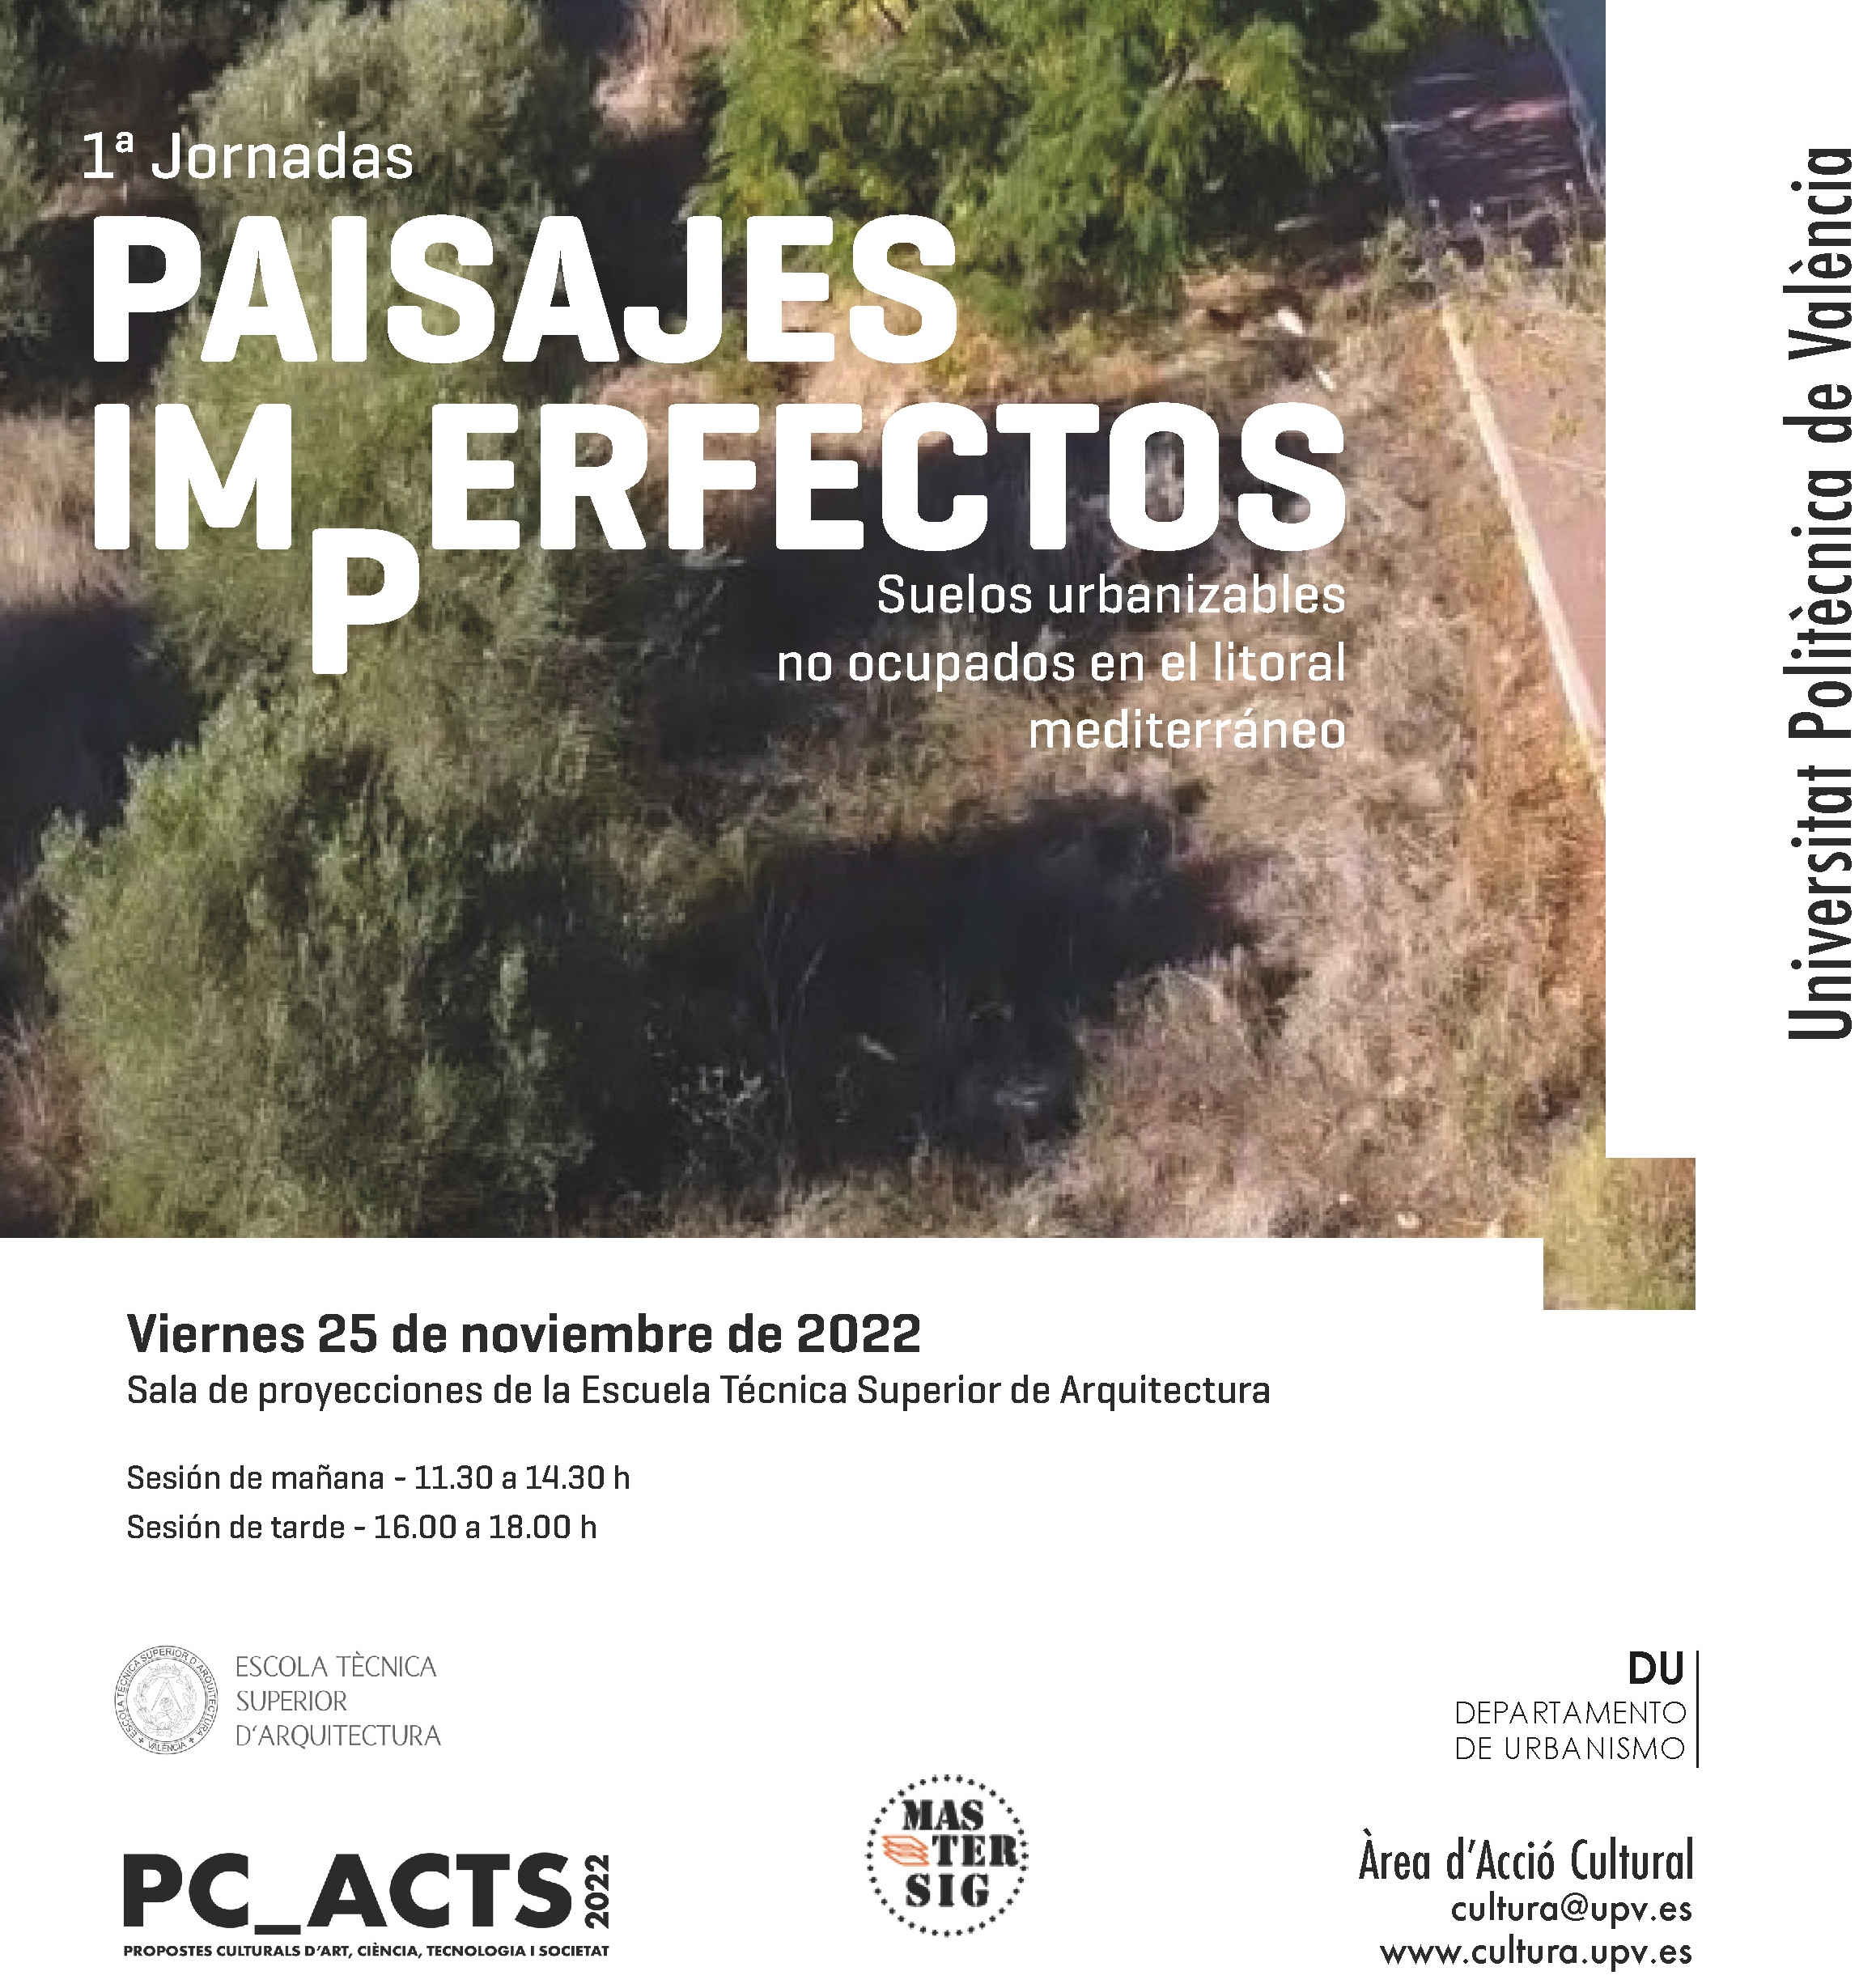 Seminario “Paisajes imperfectos, suelos urbanizables no ocupados en la Comunitat Valenciana”